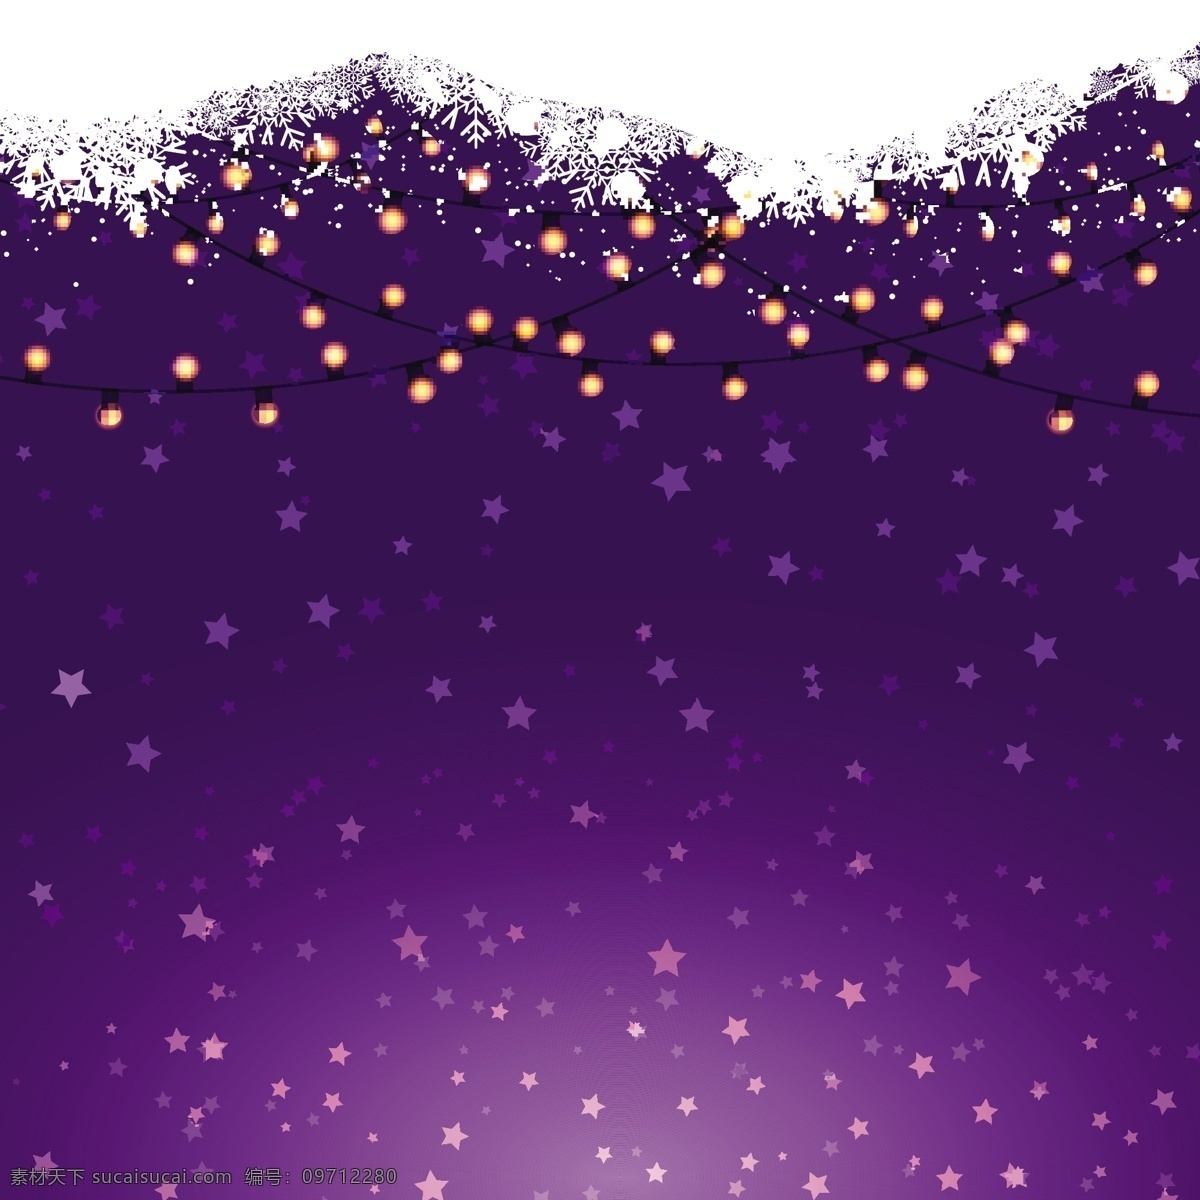 紫色圣诞灯饰 圣诞节 抽象 几何 雪花 圣诞快乐 冬季 快乐 明星 圣诞 庆祝活动 假日 紫色 装饰